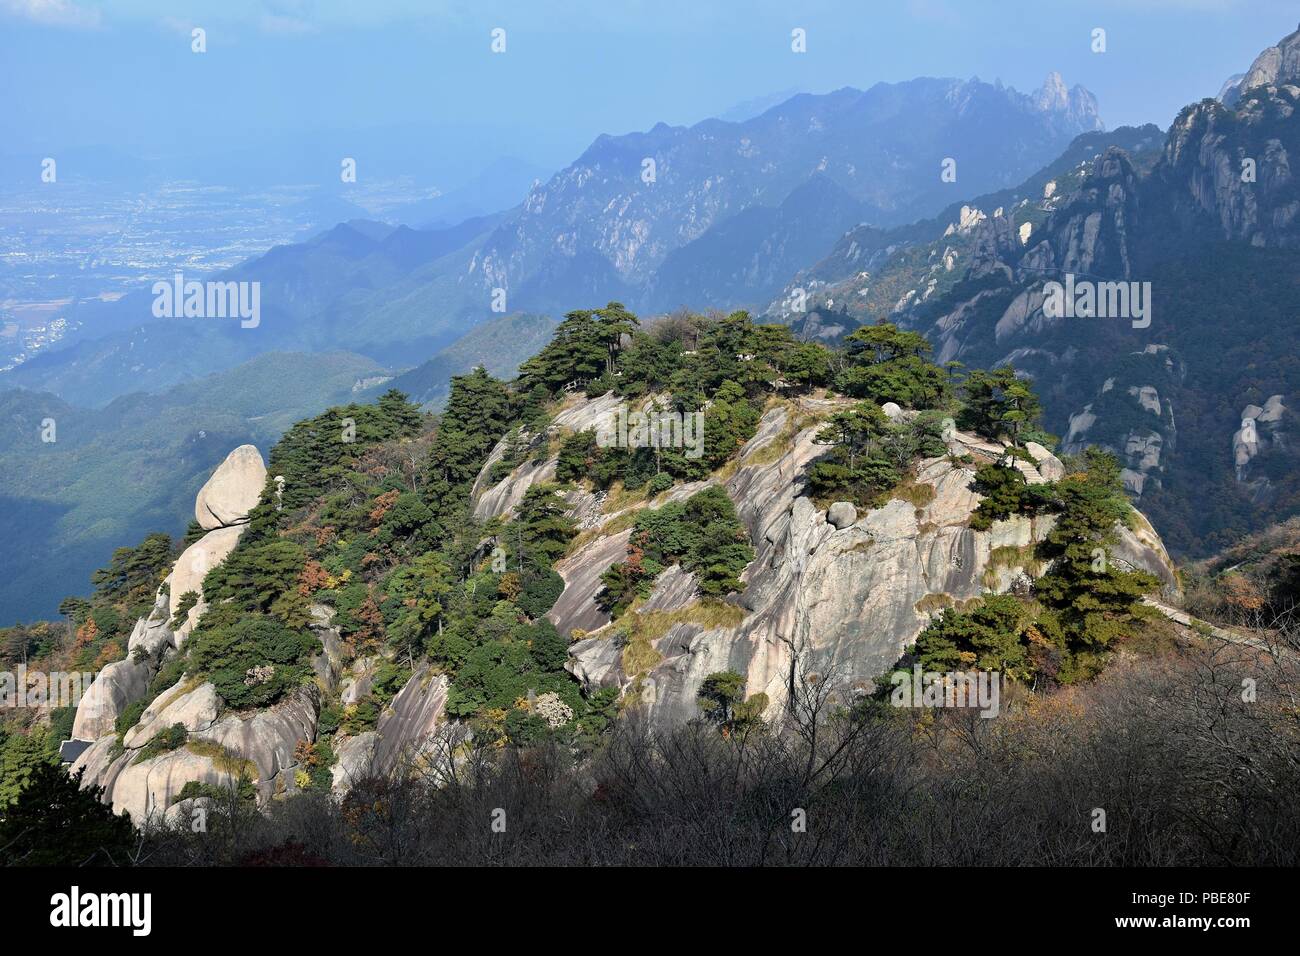 Il monte Jiuhua, nove Montagne incantate, è una delle quattro montagne sacre del buddismo cinese situato nella contea di Qingyang nella provincia di Anhui in Cina. Foto Stock